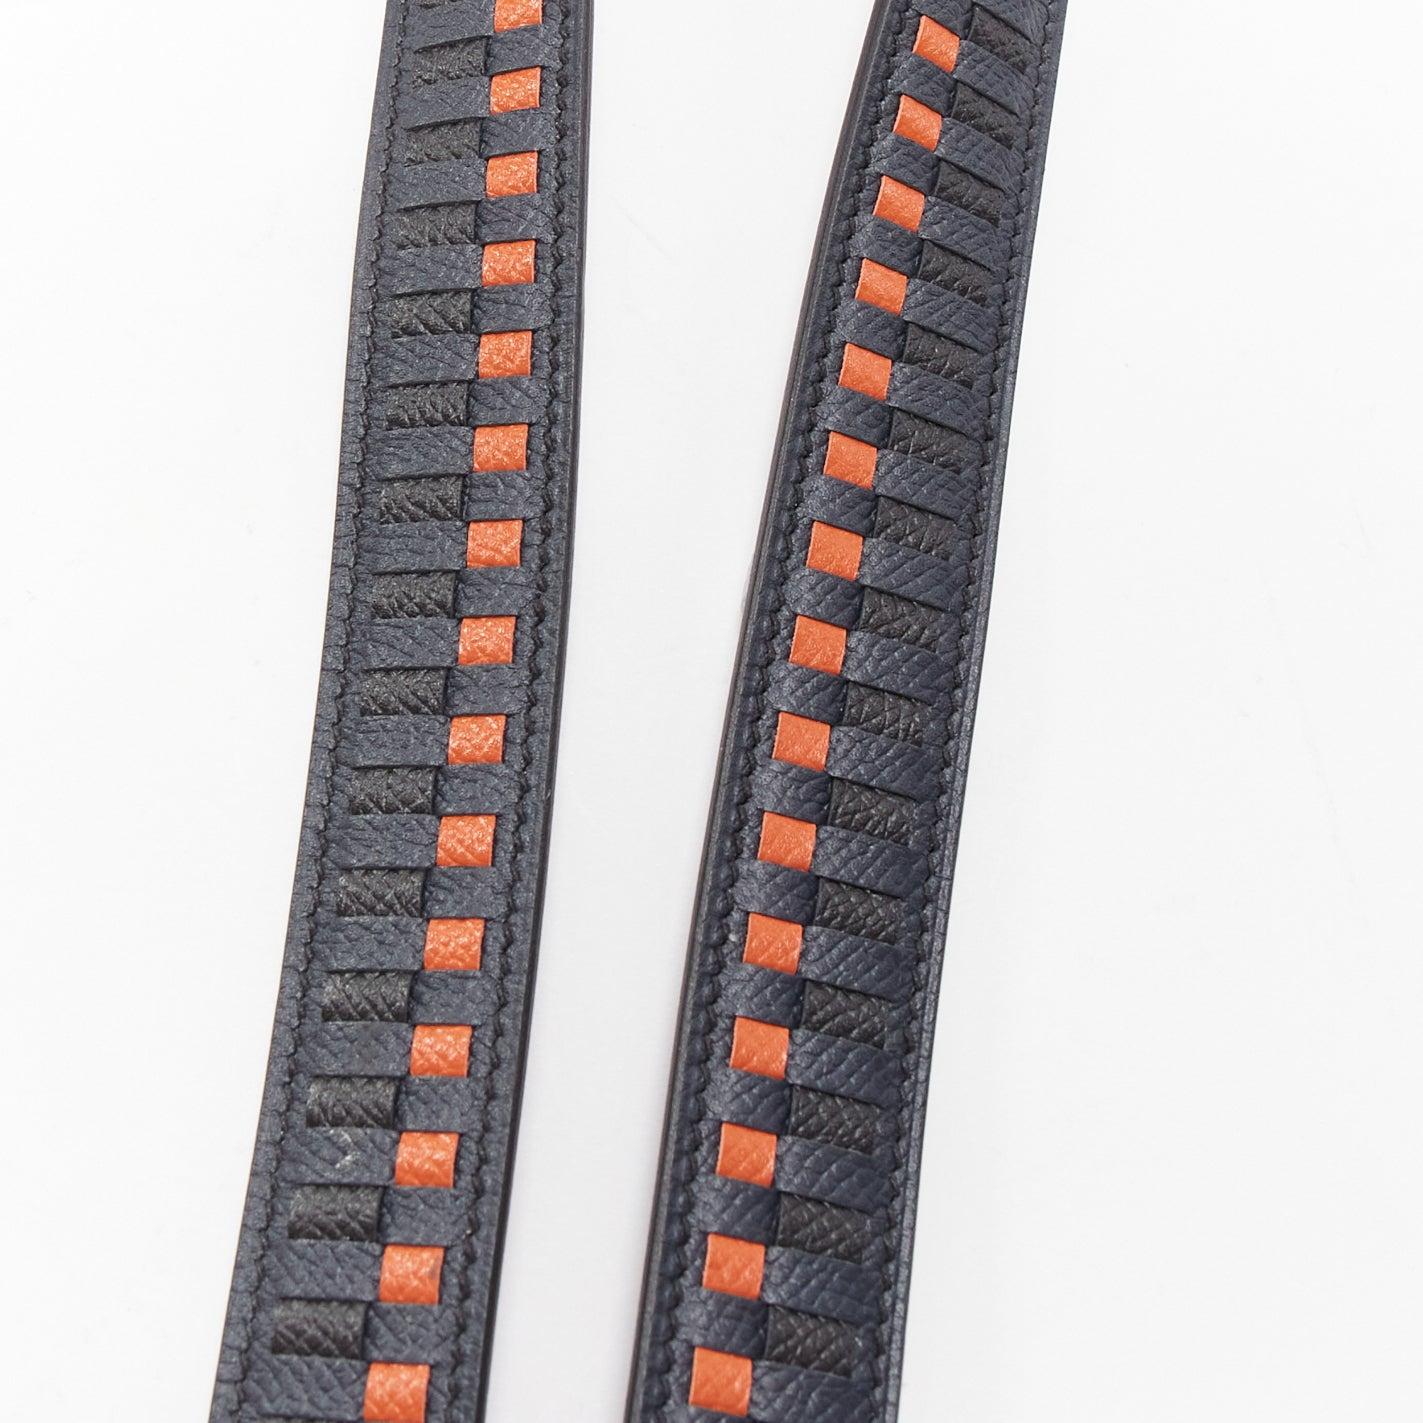 HERMES Sangle 25 orange black woven leather gold hardware bag strap 1